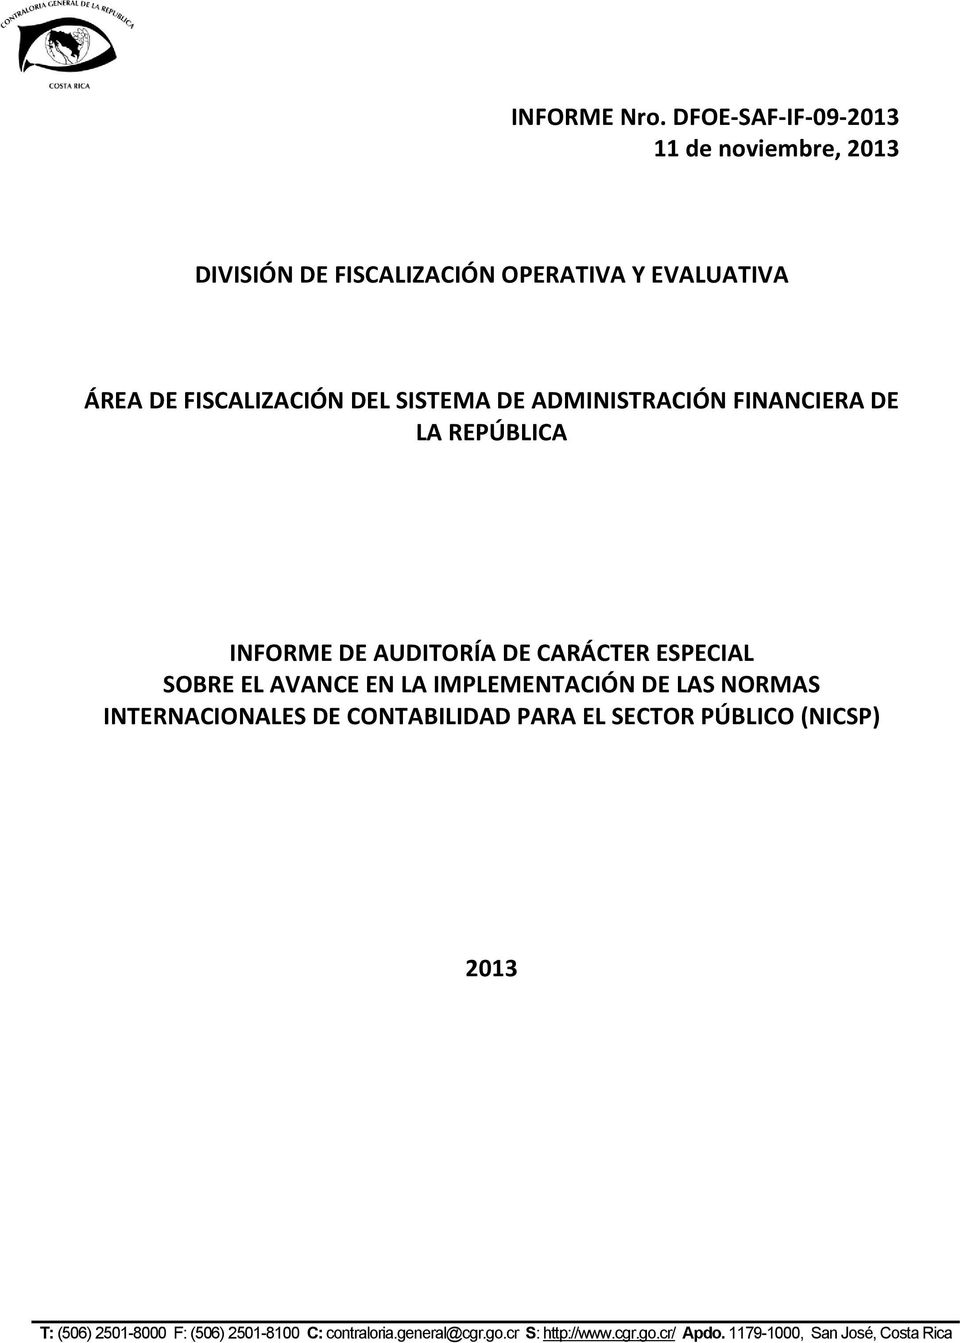 EVALUATIVA ÁREA DE FISCALIZACIÓN DEL SISTEMA DE ADMINISTRACIÓN FINANCIERA DE LA